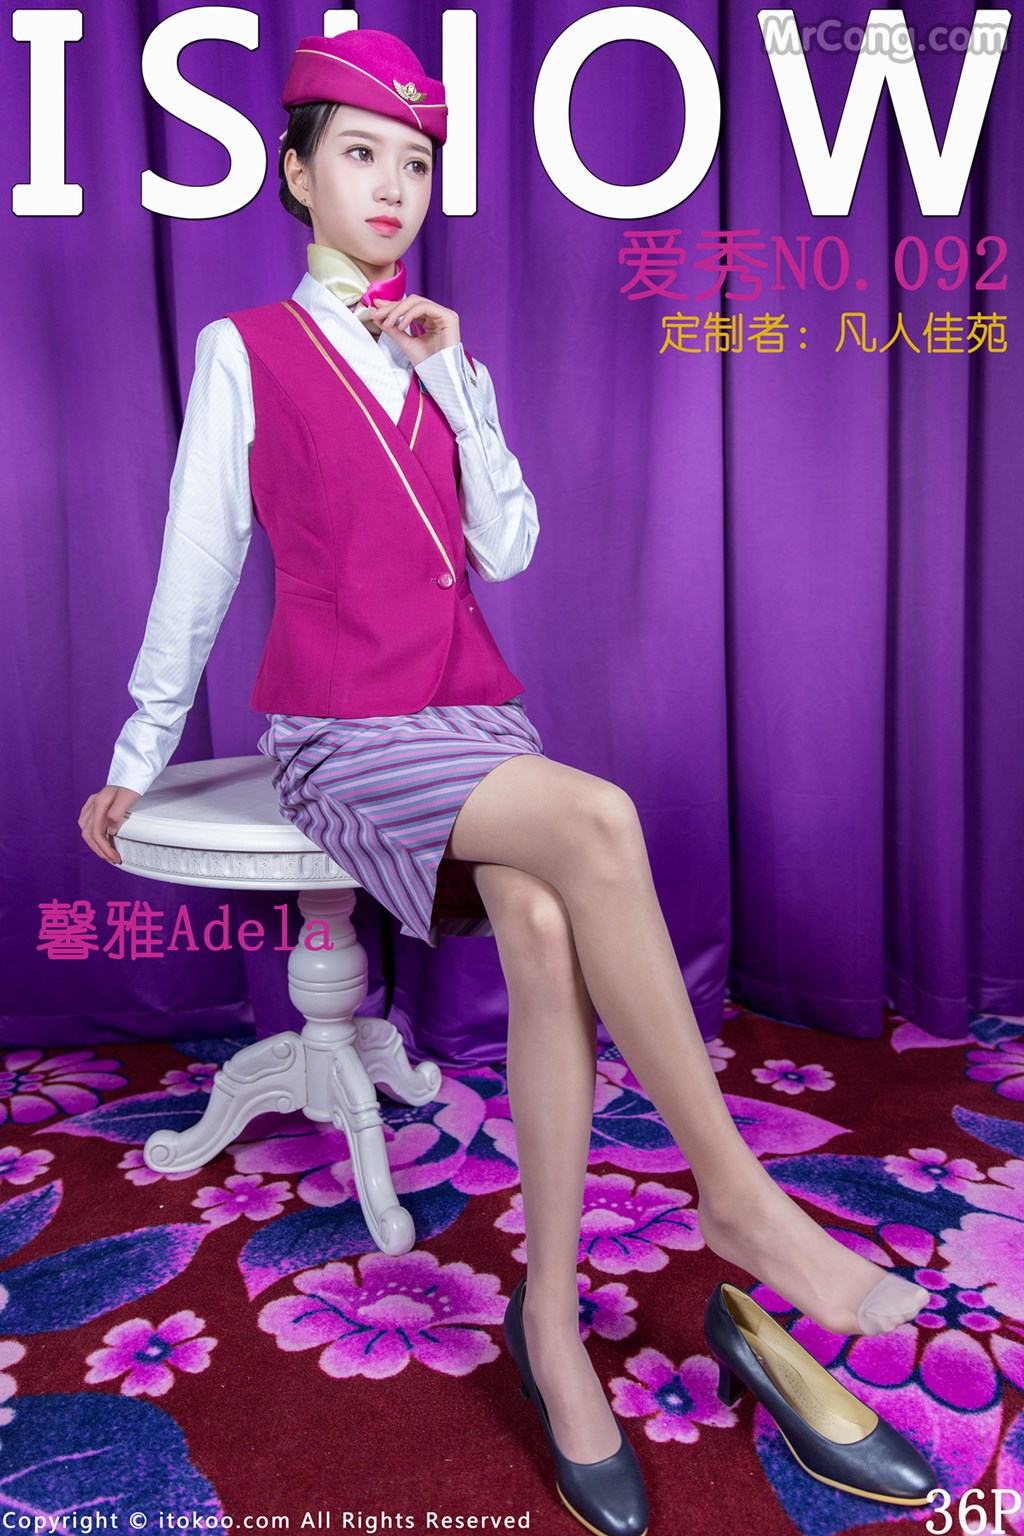 ISHOW No.092: Model Adela (馨 雅) (37 photos)